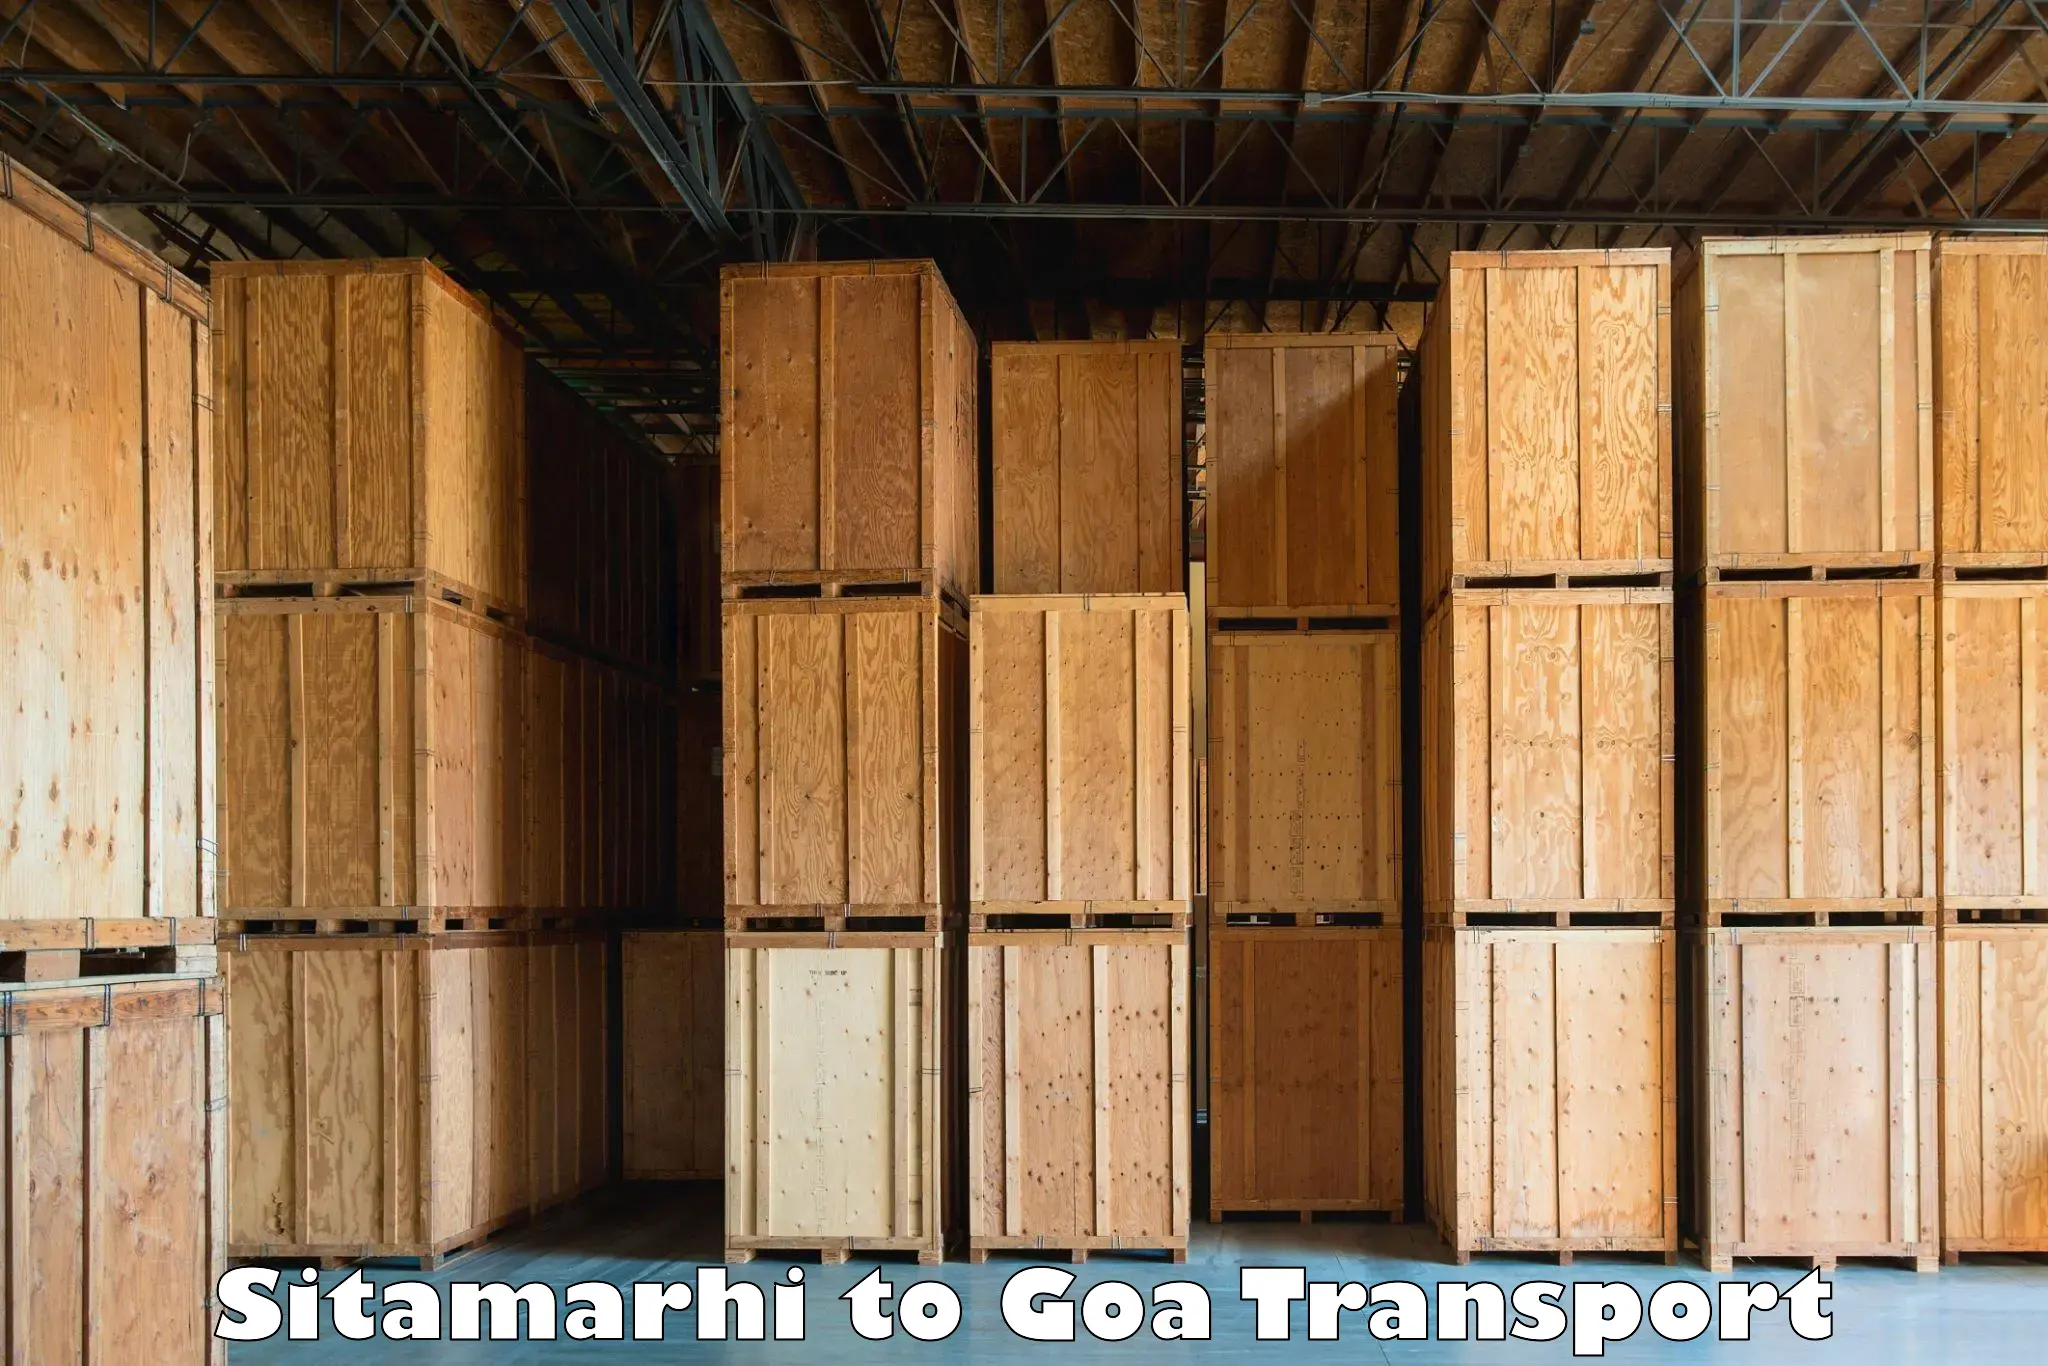 Nearest transport service Sitamarhi to Panaji